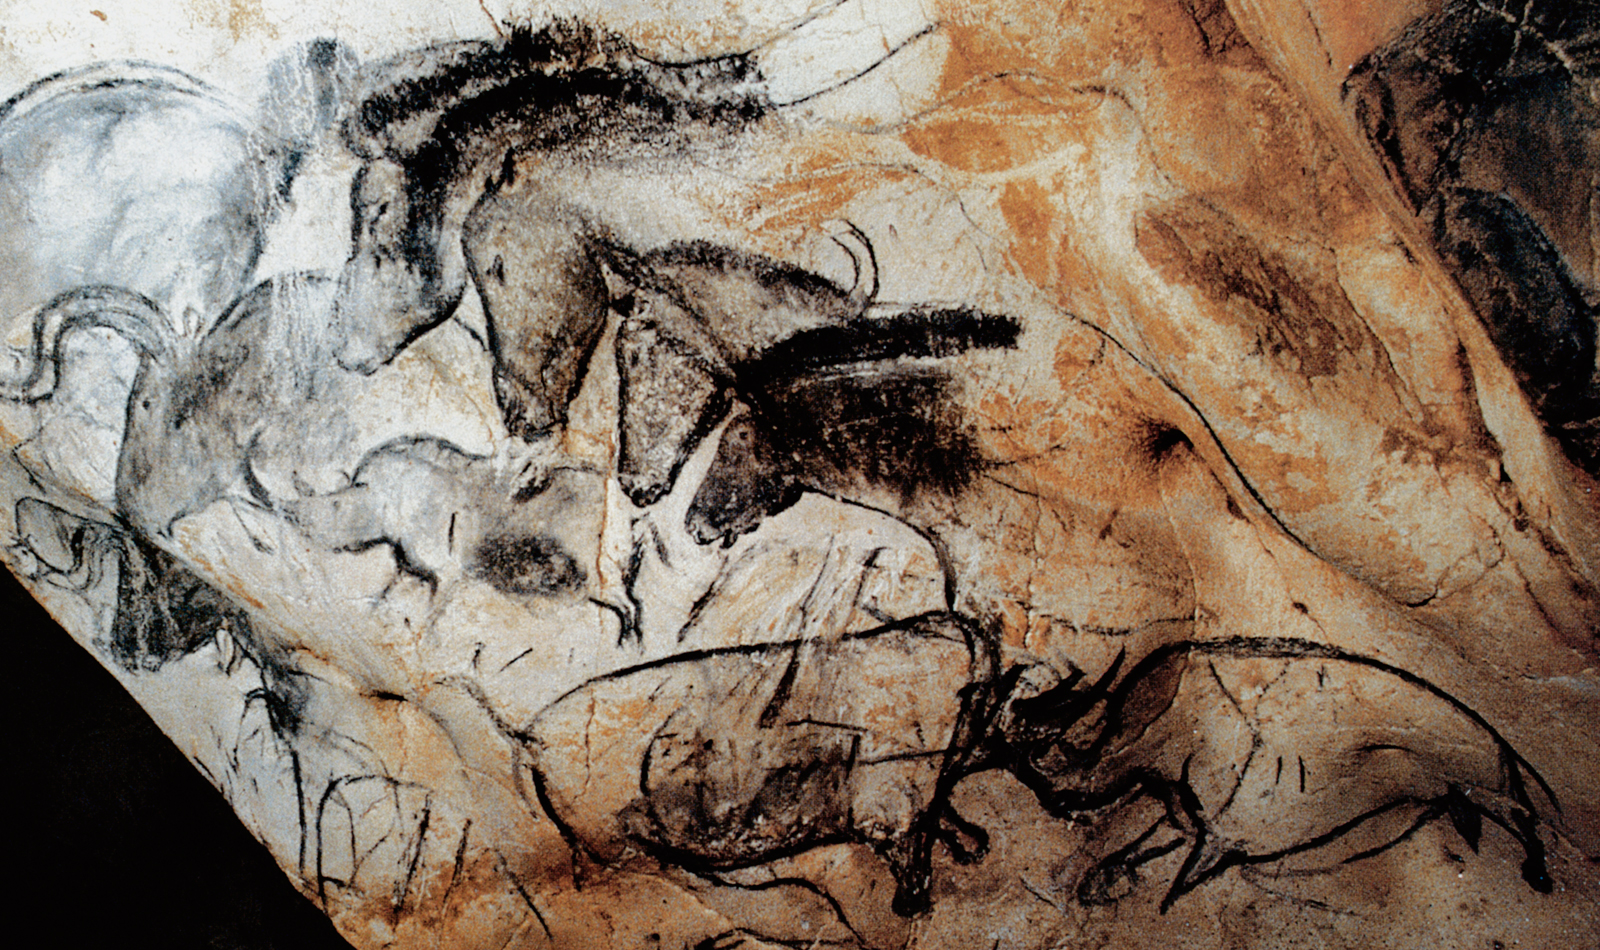 Rhion Horse Horses Chauvet Cave Paintings Rock Art France Bradshaw Foundation